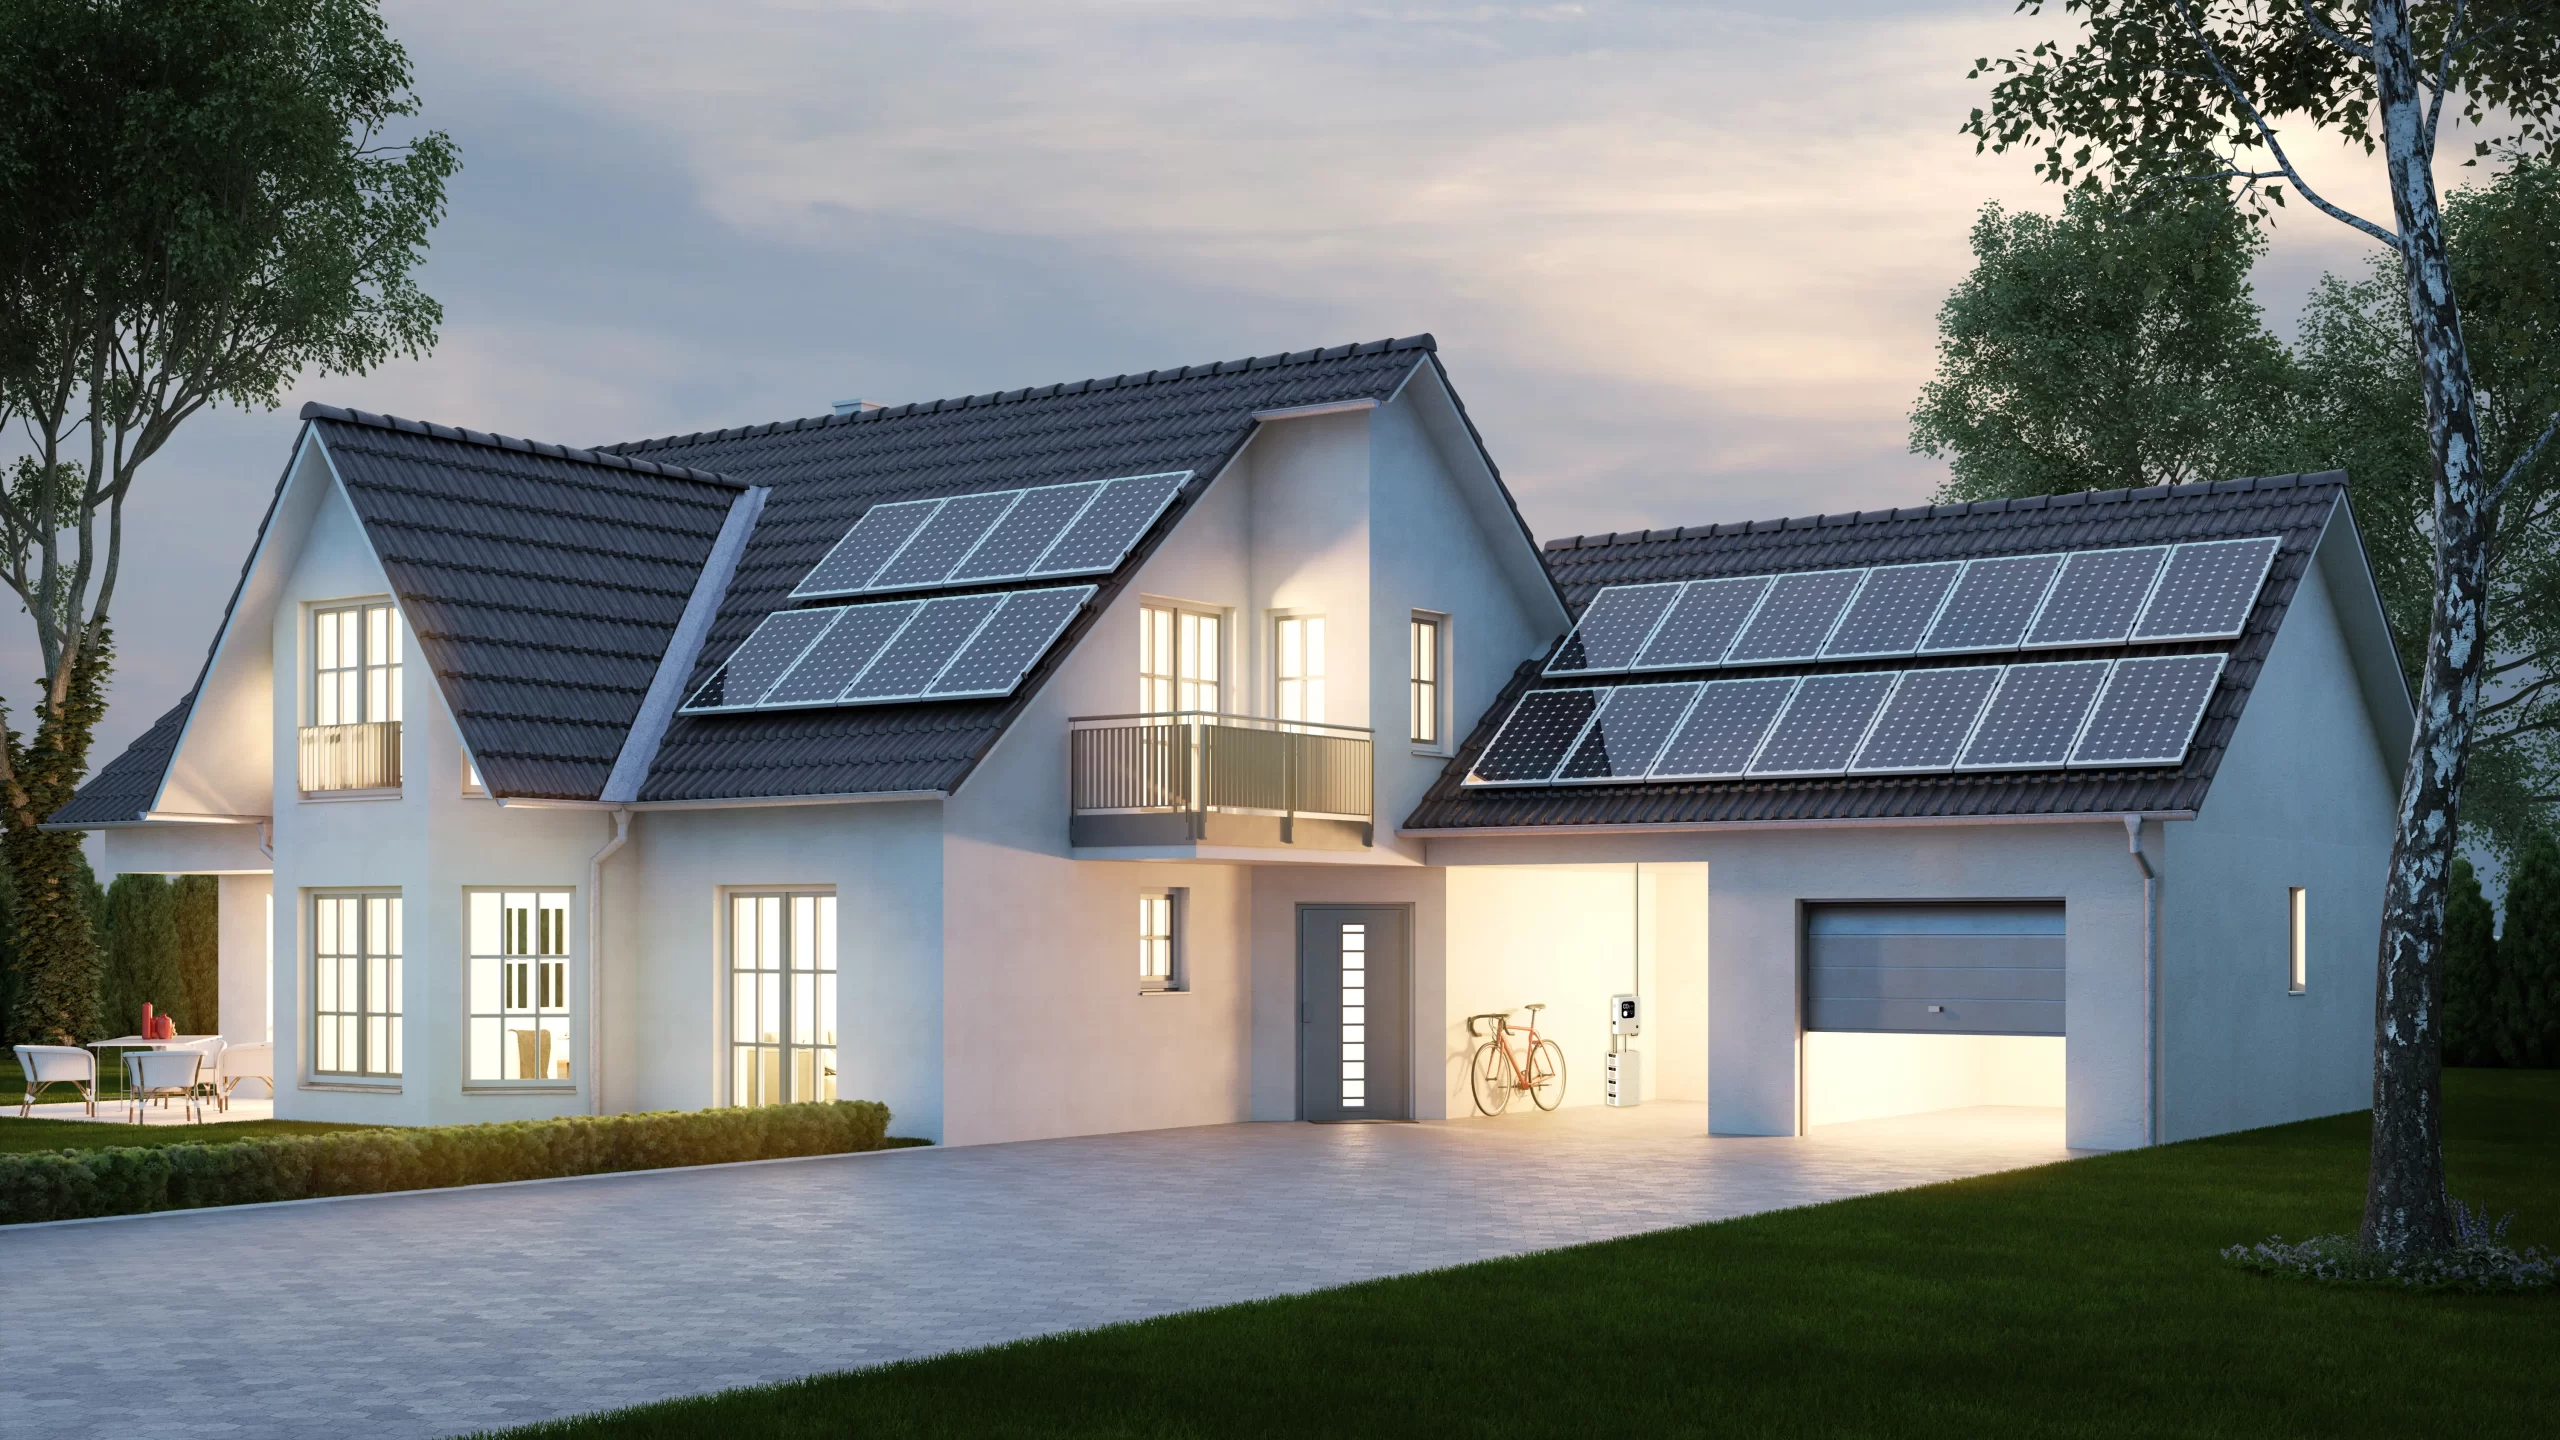 Aplicação do armazenamento doméstico na auto-geração solar